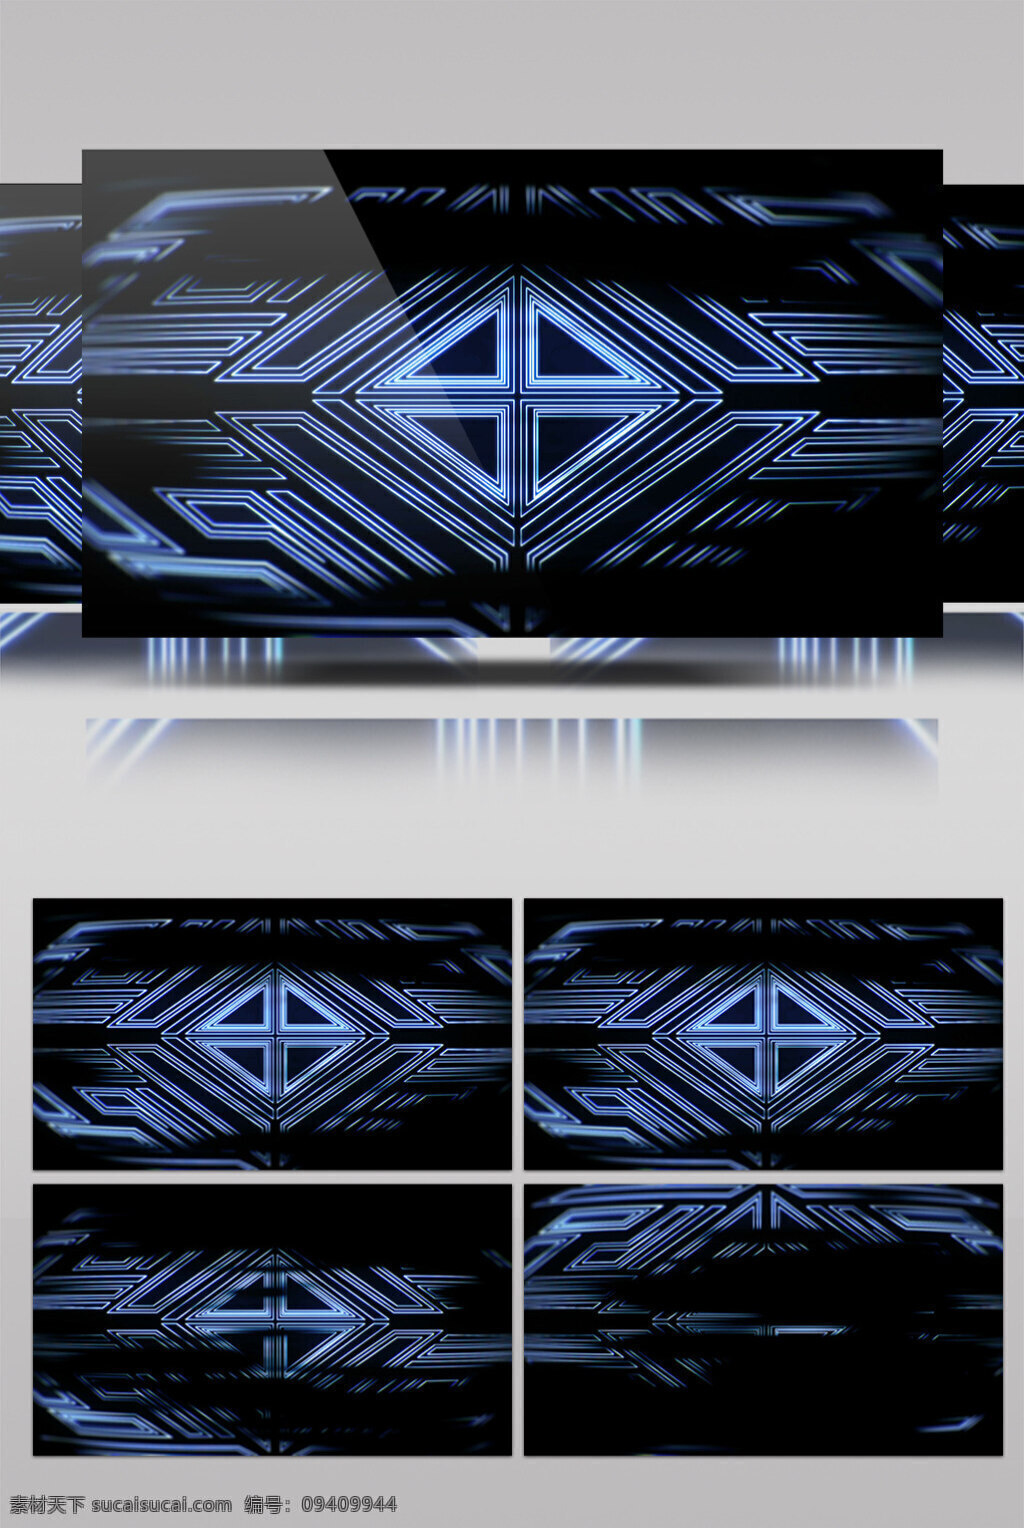 窗口 视频 创意设计 窗口几何 暗蓝色 三维动态类 几何魔法 空间几何变换 3d视频素材 特效视频素材